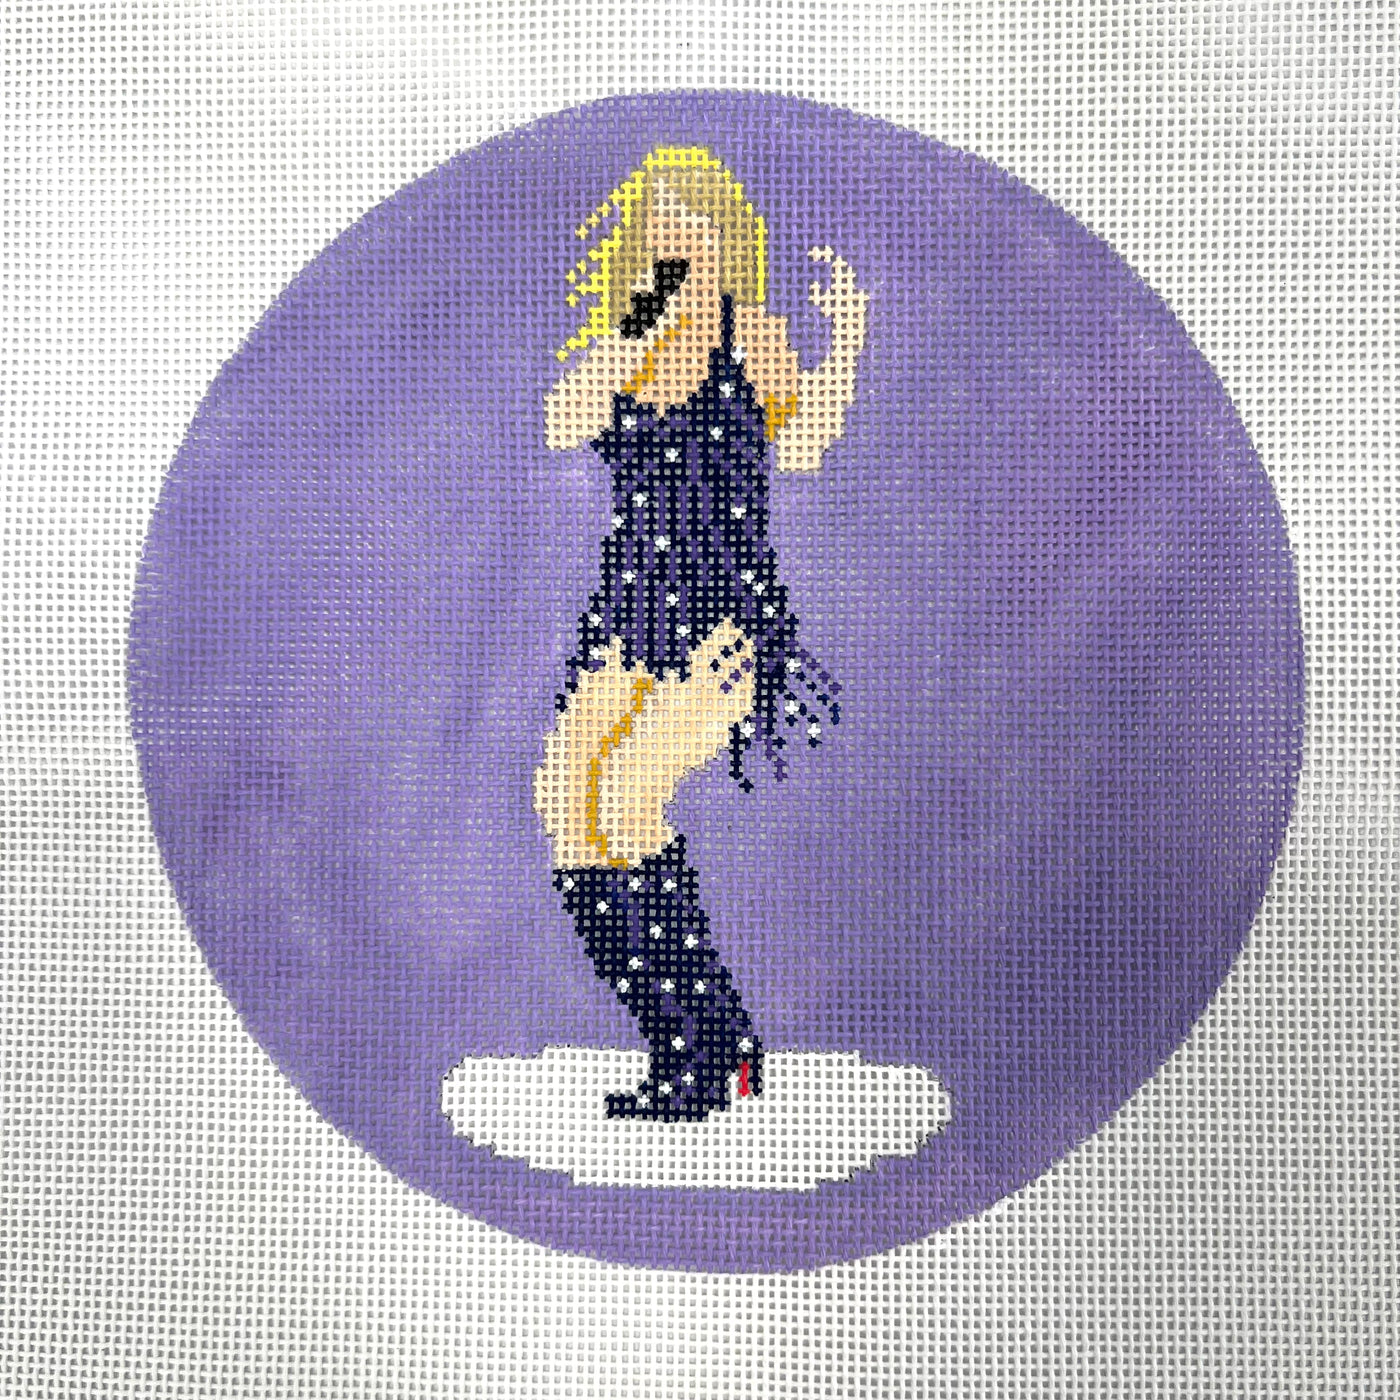 Taylor on Purple Needlepoint Canvas